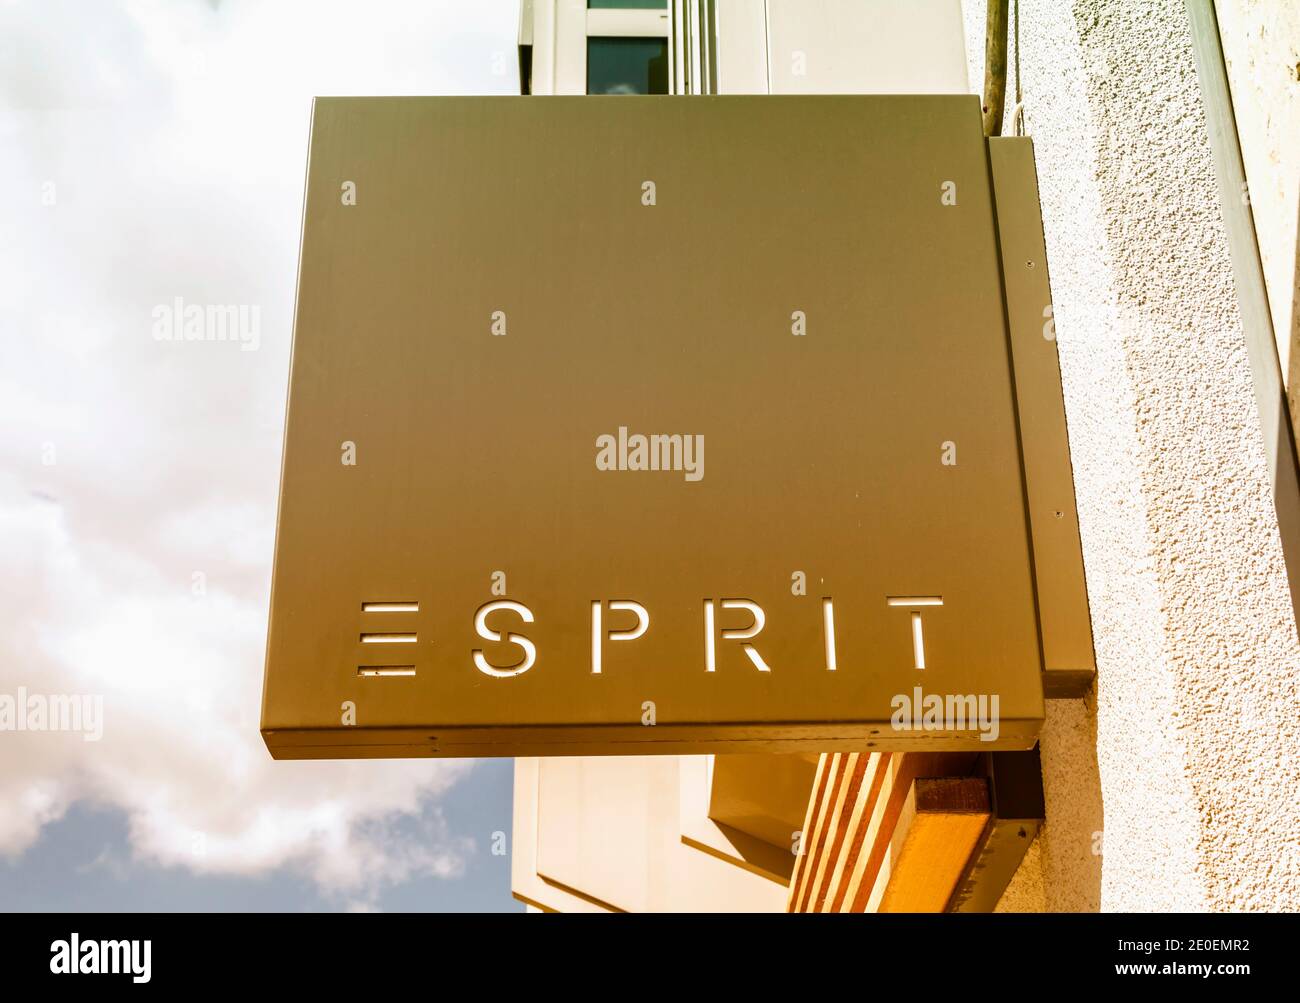 vecino Bandido Inhibir Logotipo Esprit en el frente de una tienda. Esprit es un fabricante de ropa,  calzado, accesorios, joyería y artículos de casa bajo la etiqueta Esprit  Fotografía de stock - Alamy